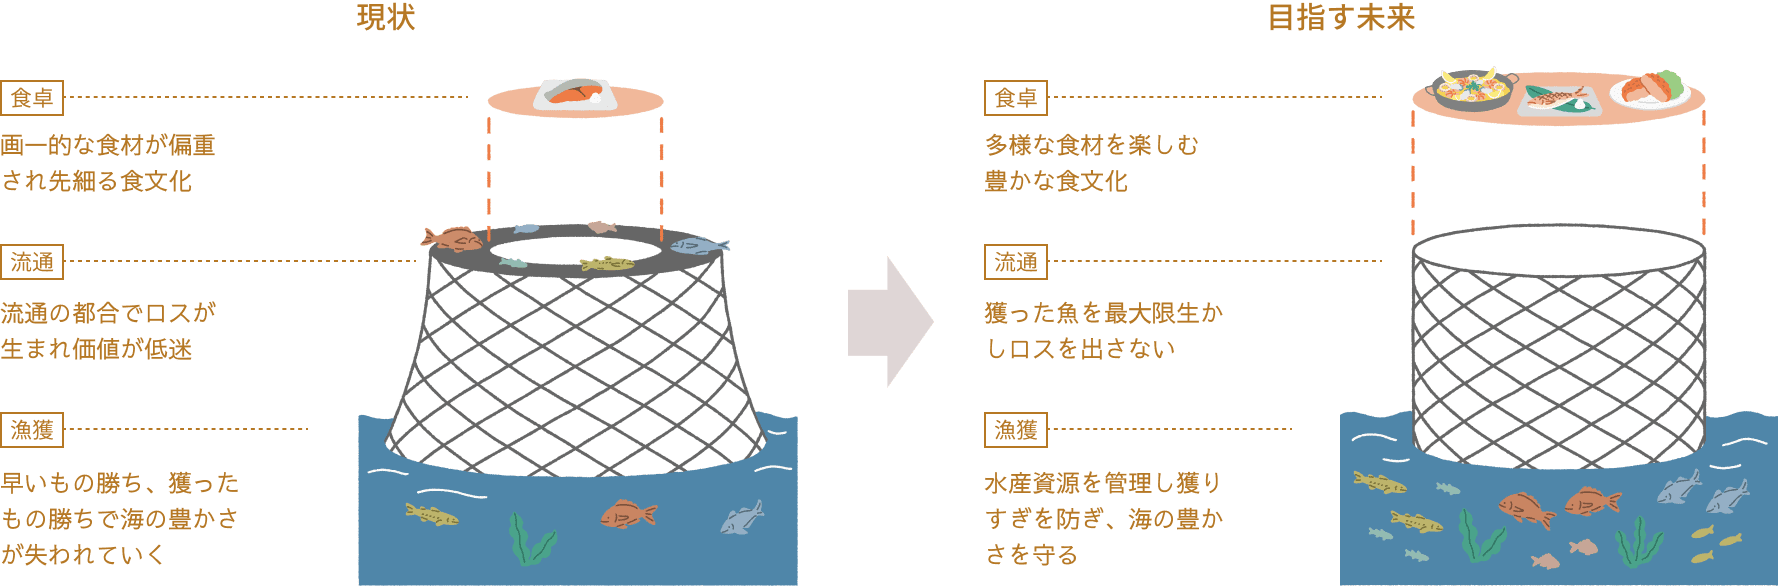 「サステナブルな魚食文化」概念図